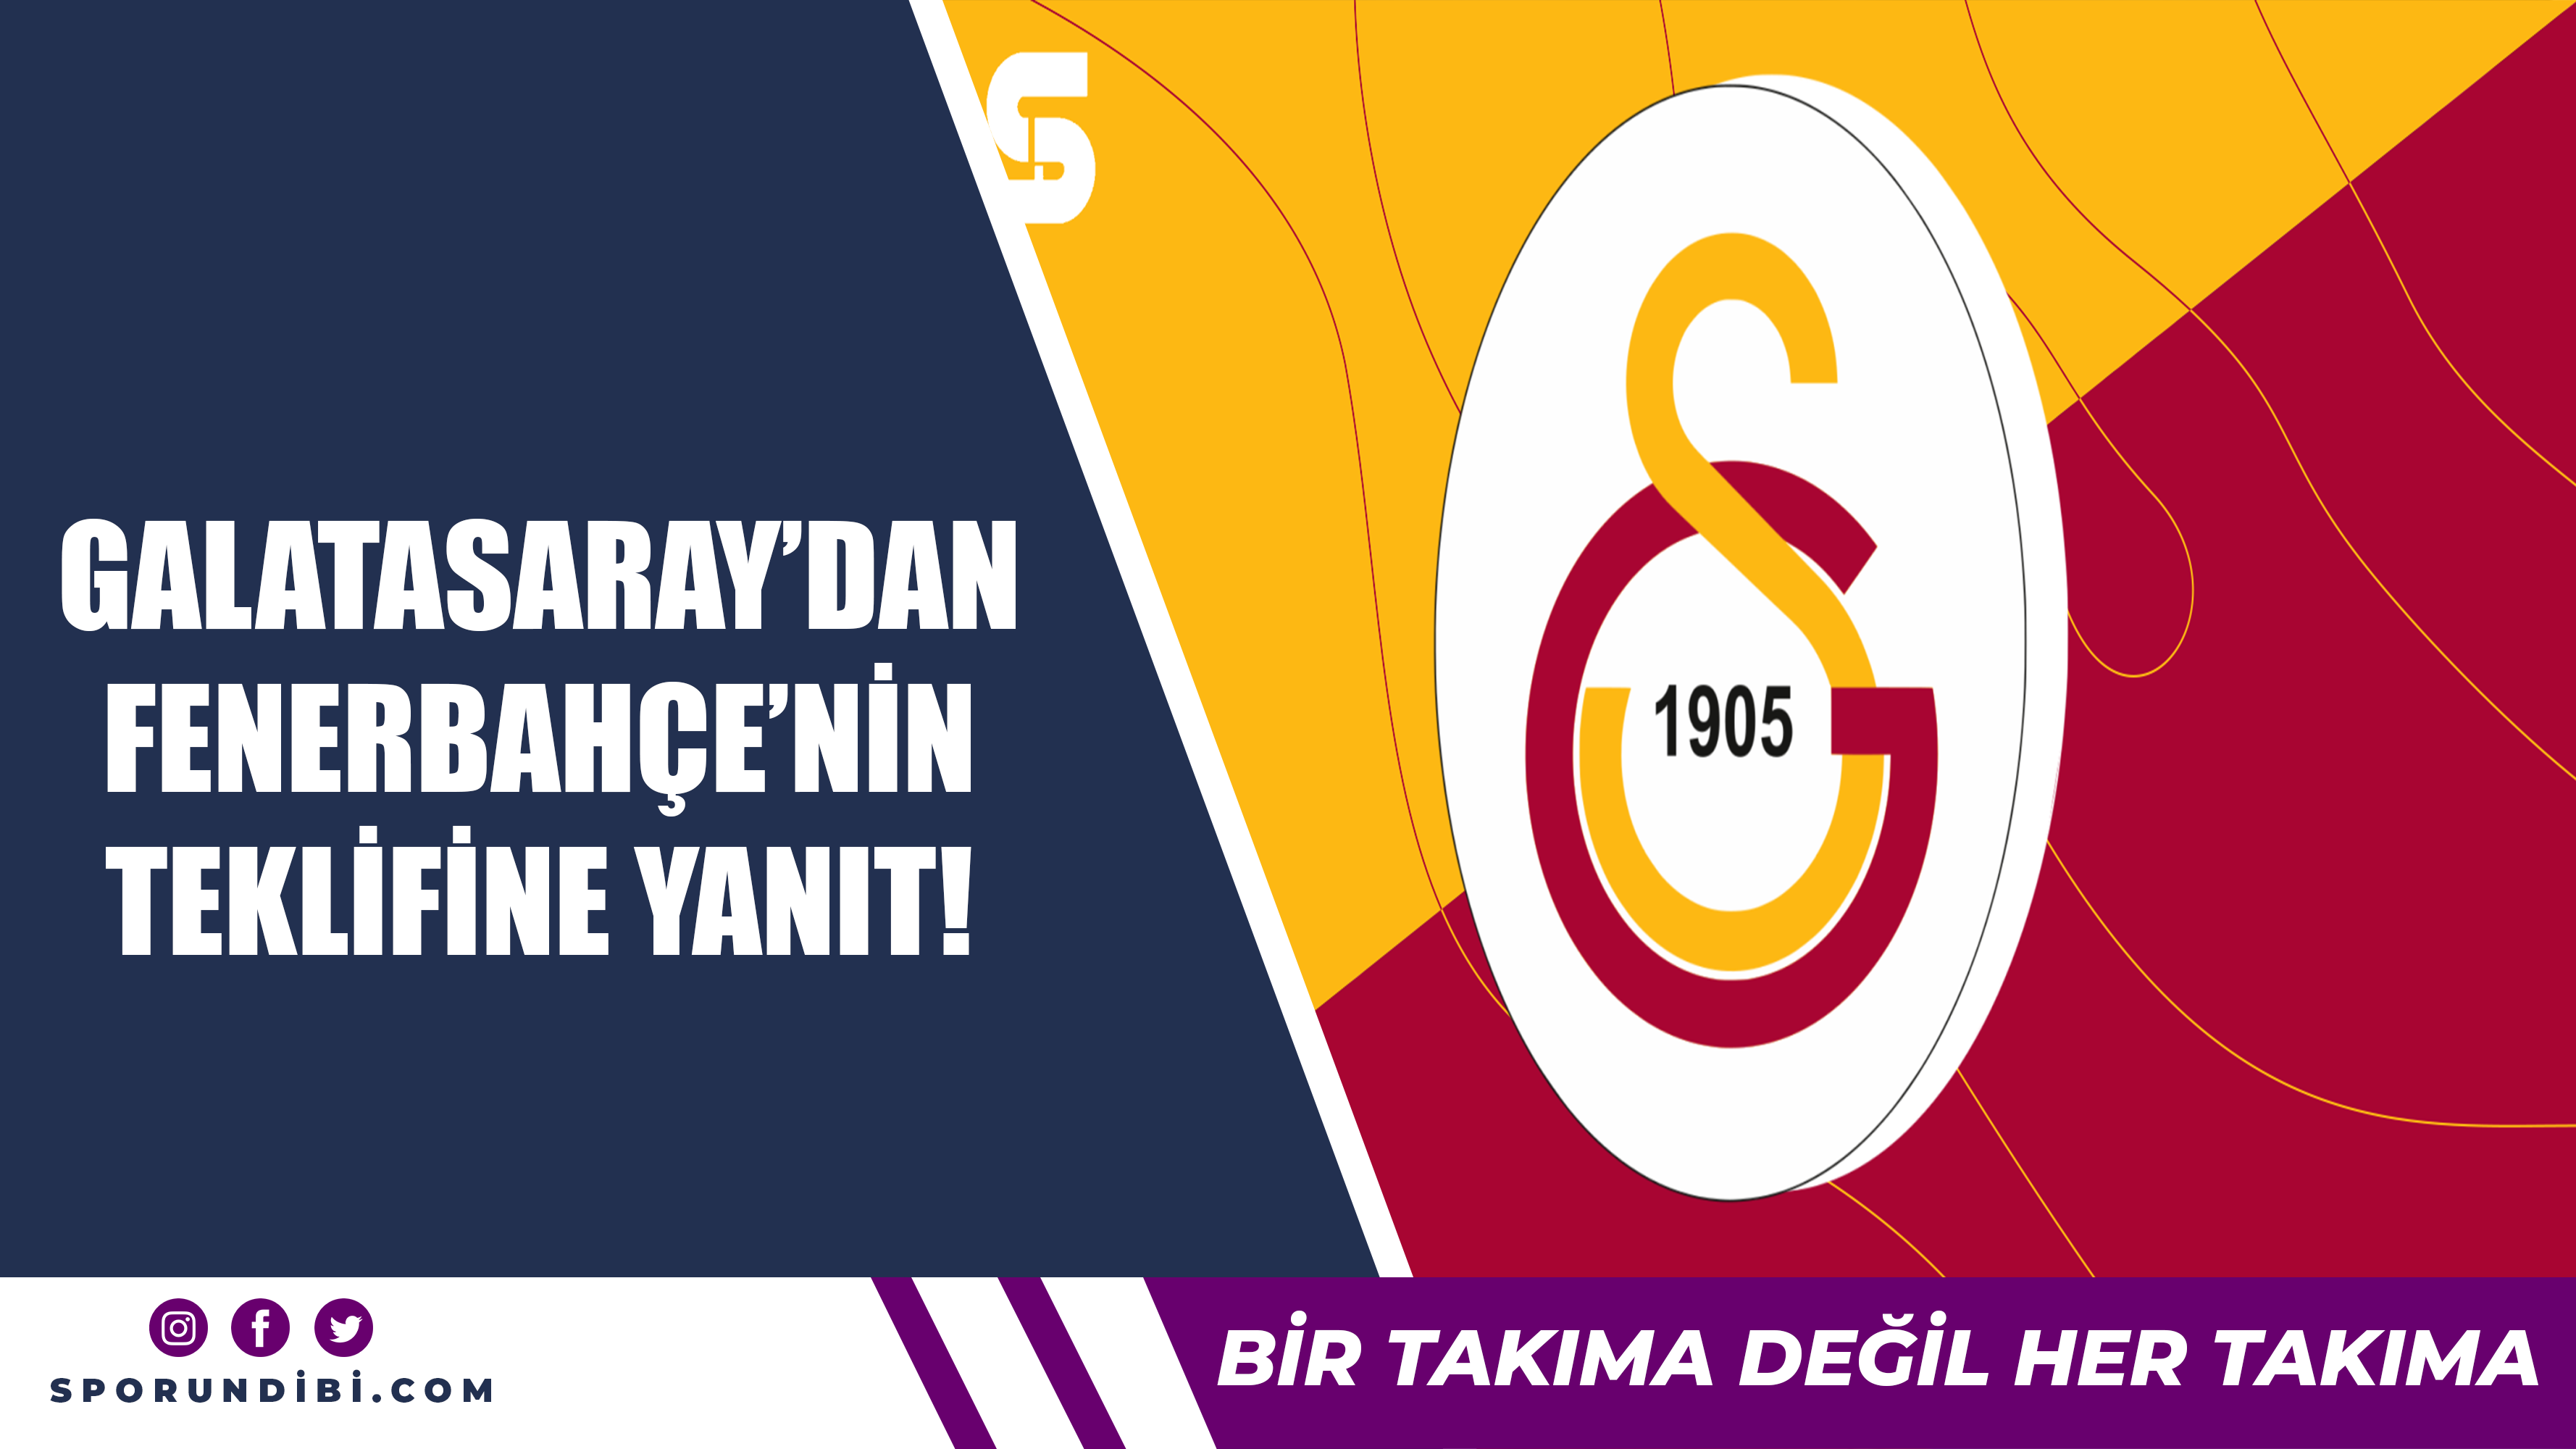 Galatasaray'dan Fenerbahçe'nin teklifine yanıt!